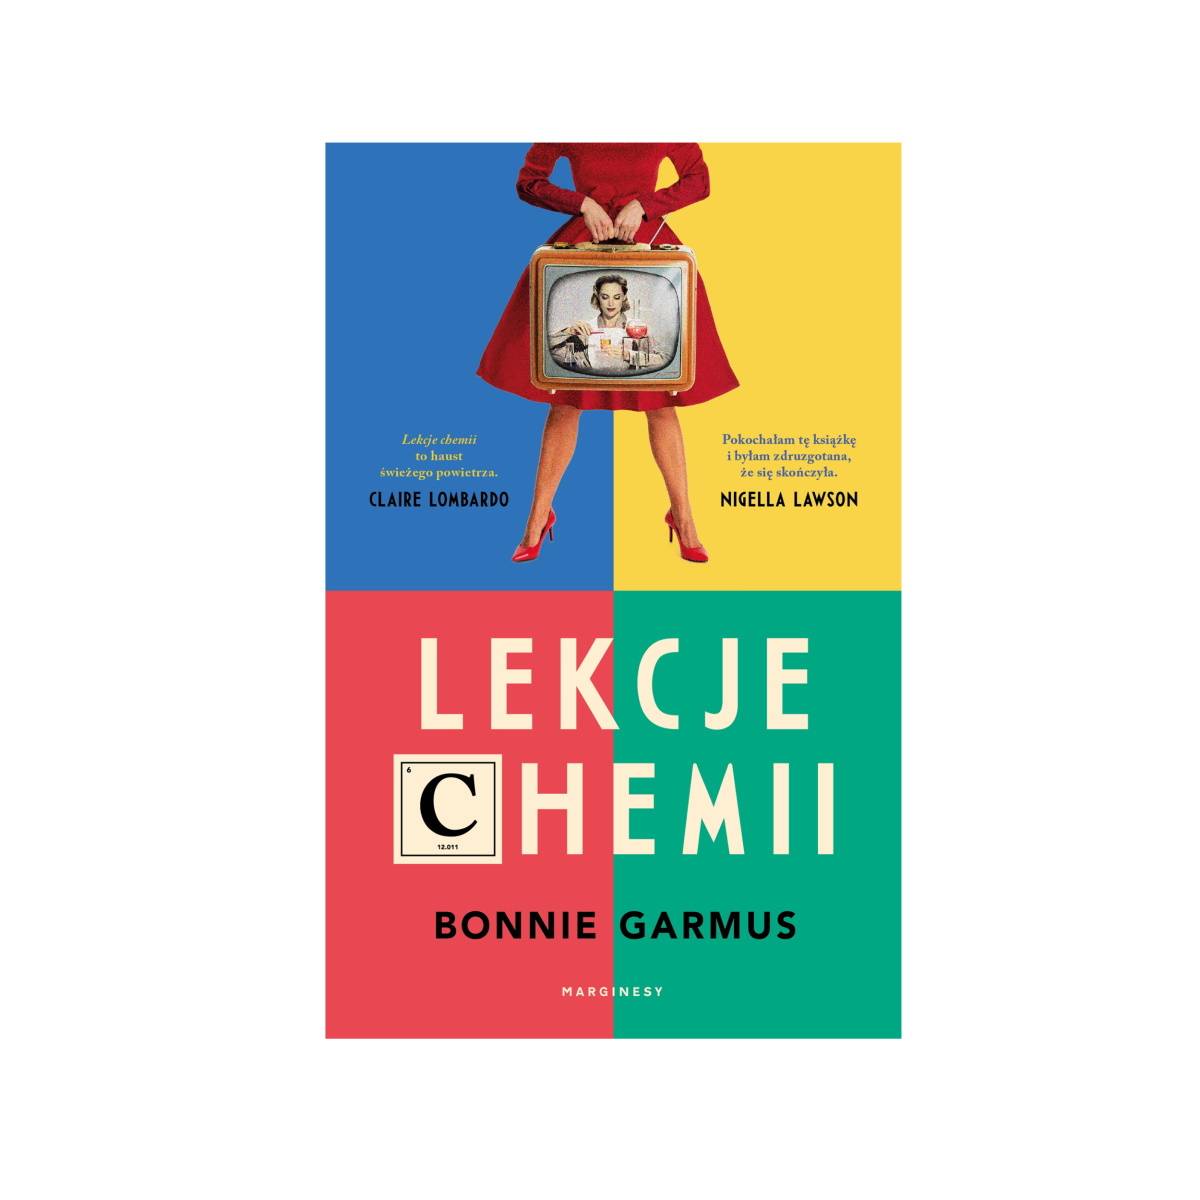 9 najciekawszych książek na długi weekend, które wciągają równie mocno jak seriale. Bonnie Garmus, „Lekcje chemii”, tłum. Marek Cieślik, Marginesy.